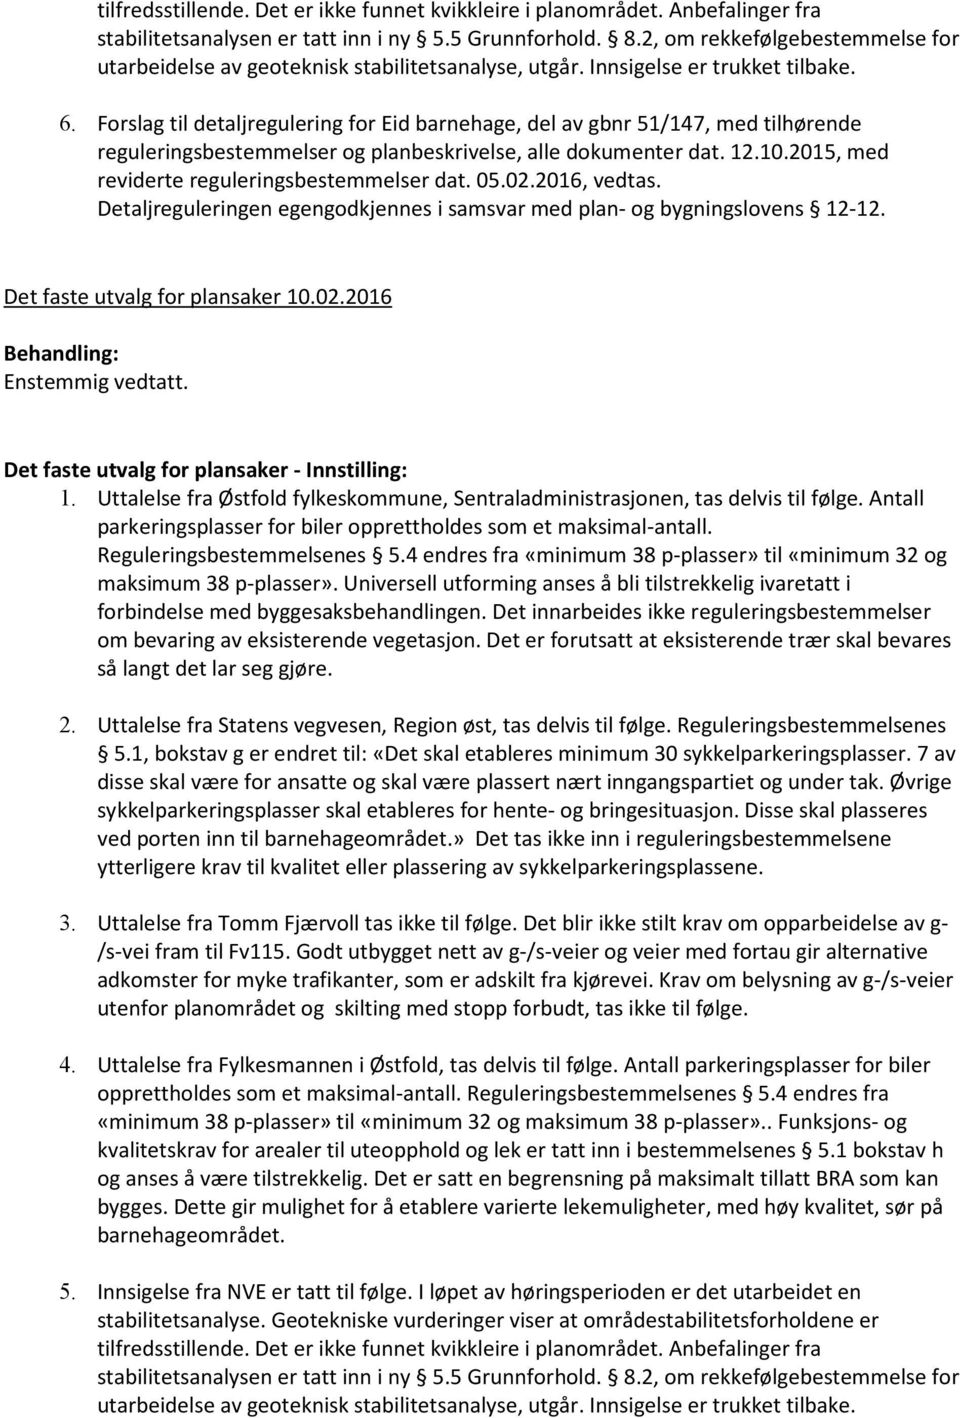 Forslag til detaljregulering for Eid barnehage, del av gbnr 51/147, med tilhørende reguleringsbestemmelser og planbeskrivelse, alle dokumenter dat. 12.10.